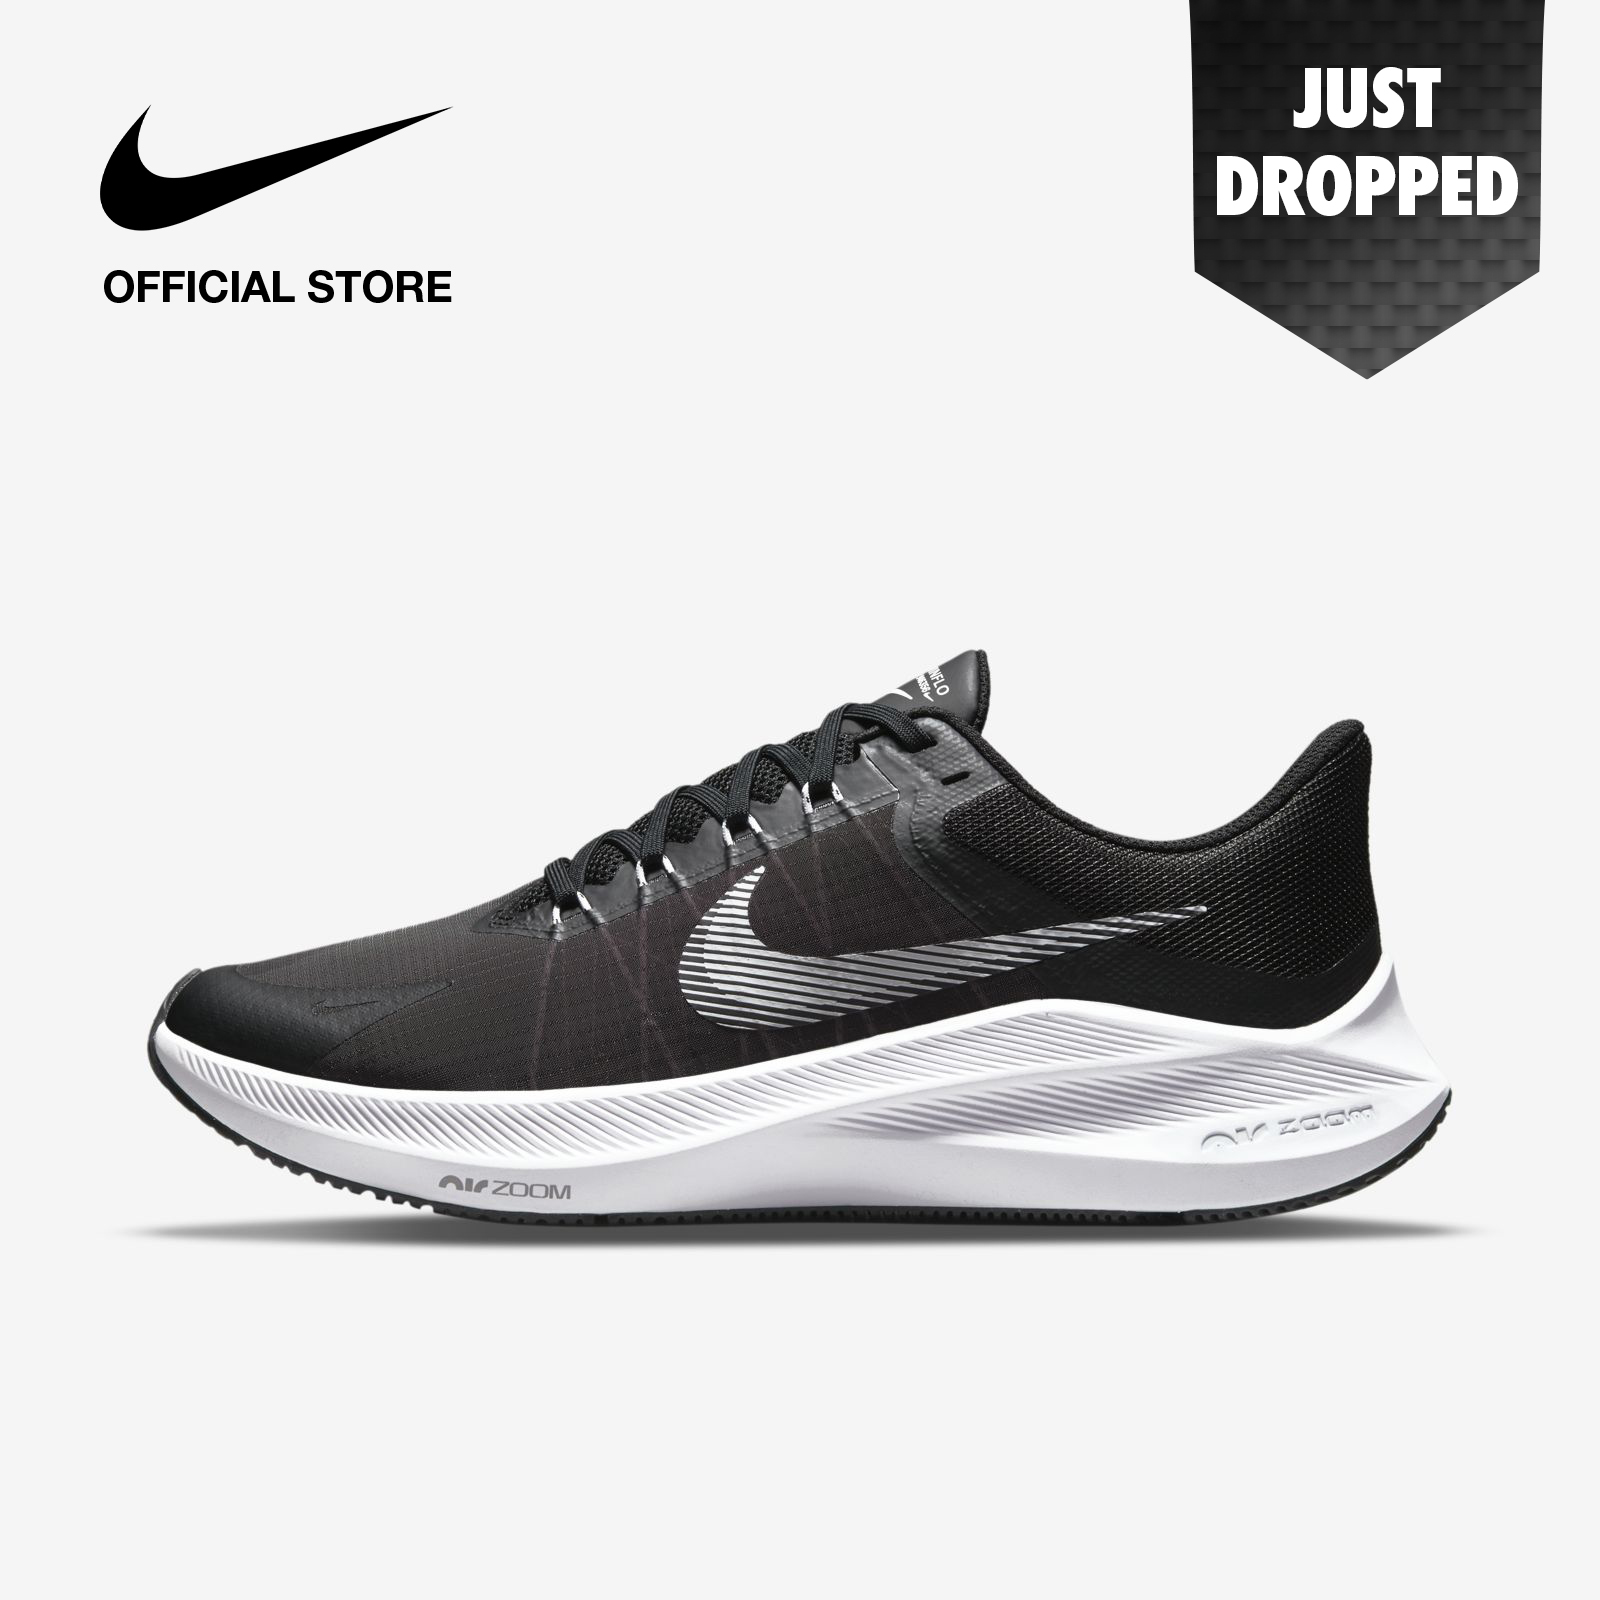 Nike Men's Winflo 8 Running Shoes - Black ไนกี้ รองเท้าวิ่งผู้ชาย วินโฟลว 8 - สีดำ